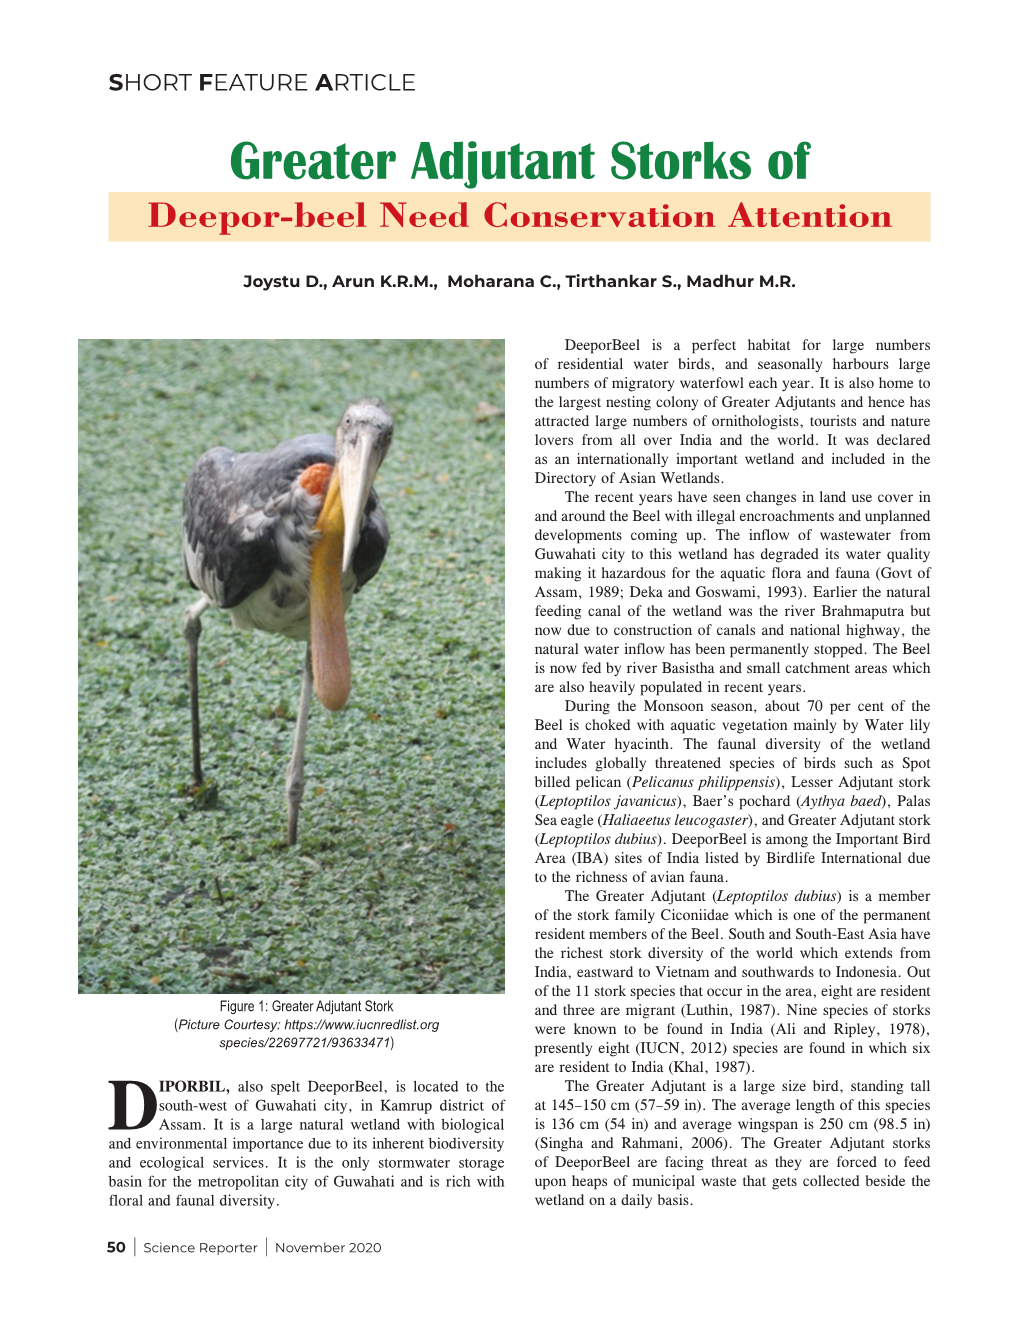 Greater Adjutant Storks of Deepor-Beel Need Conservation Attention